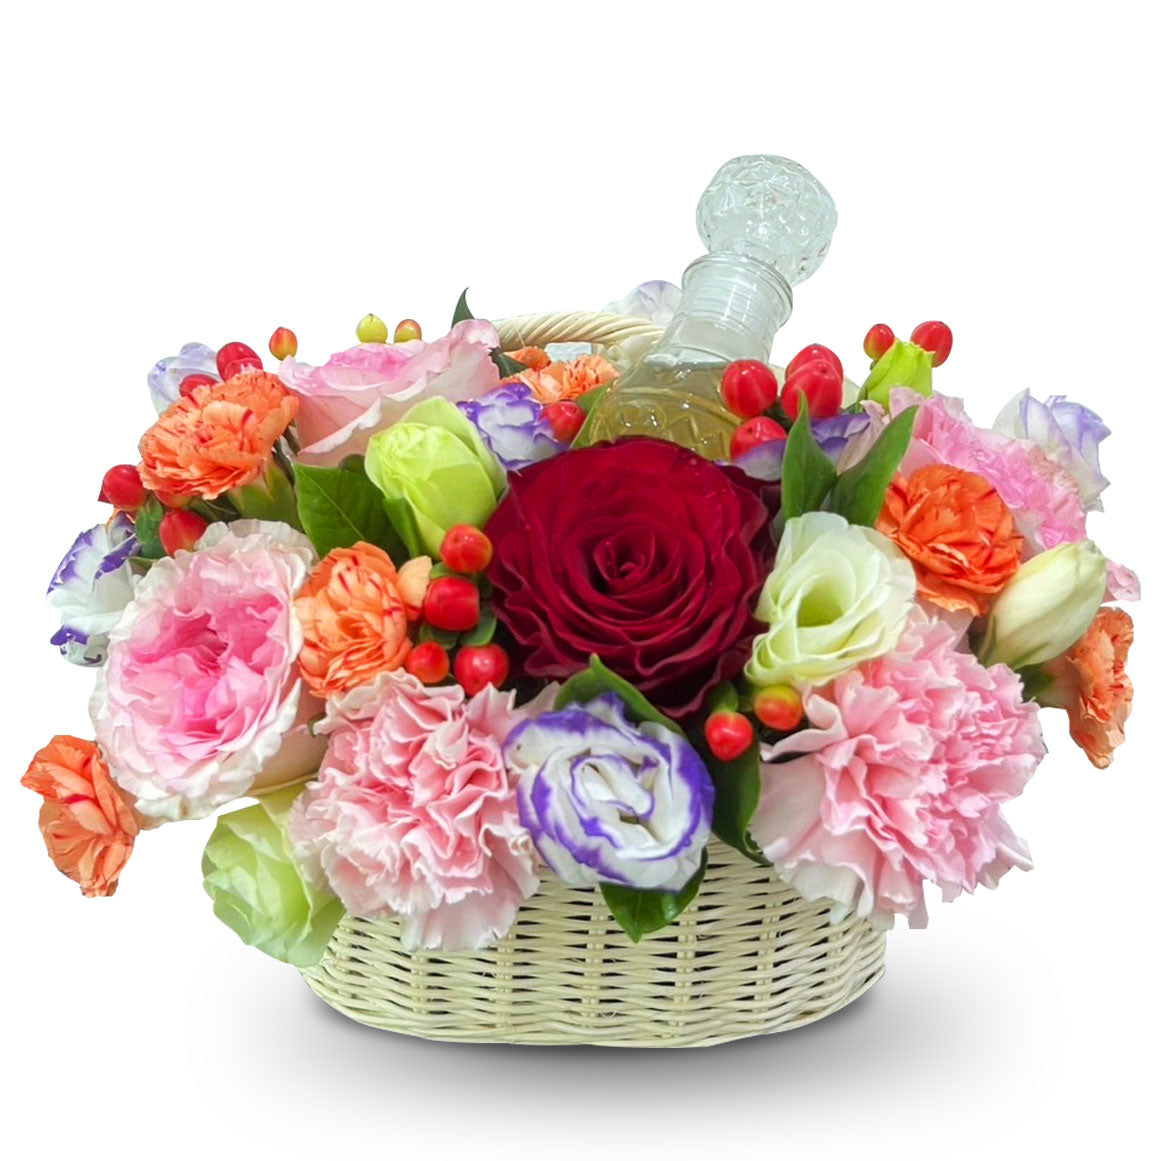 "Prosperous Blooming" Basket of Flowers with Bottle of Scented Water กระเช้าน้ำอบ แด่คุณแม่ที่เคารพรัก